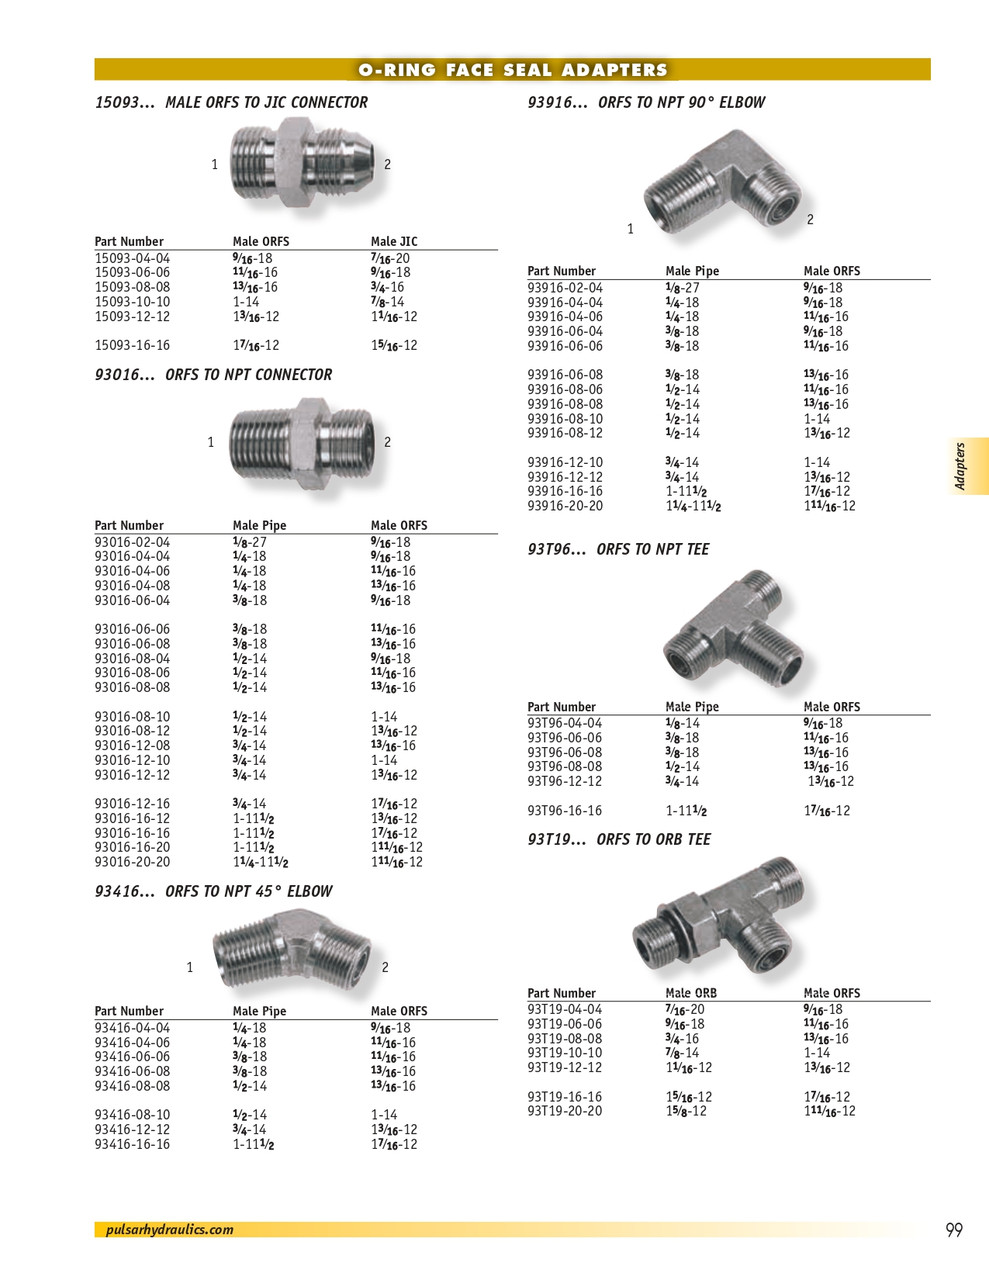 1-1/4 x 1-11/16"-12 Steel Male NPT - Male ORFS 90° Elbow  93916-20-20